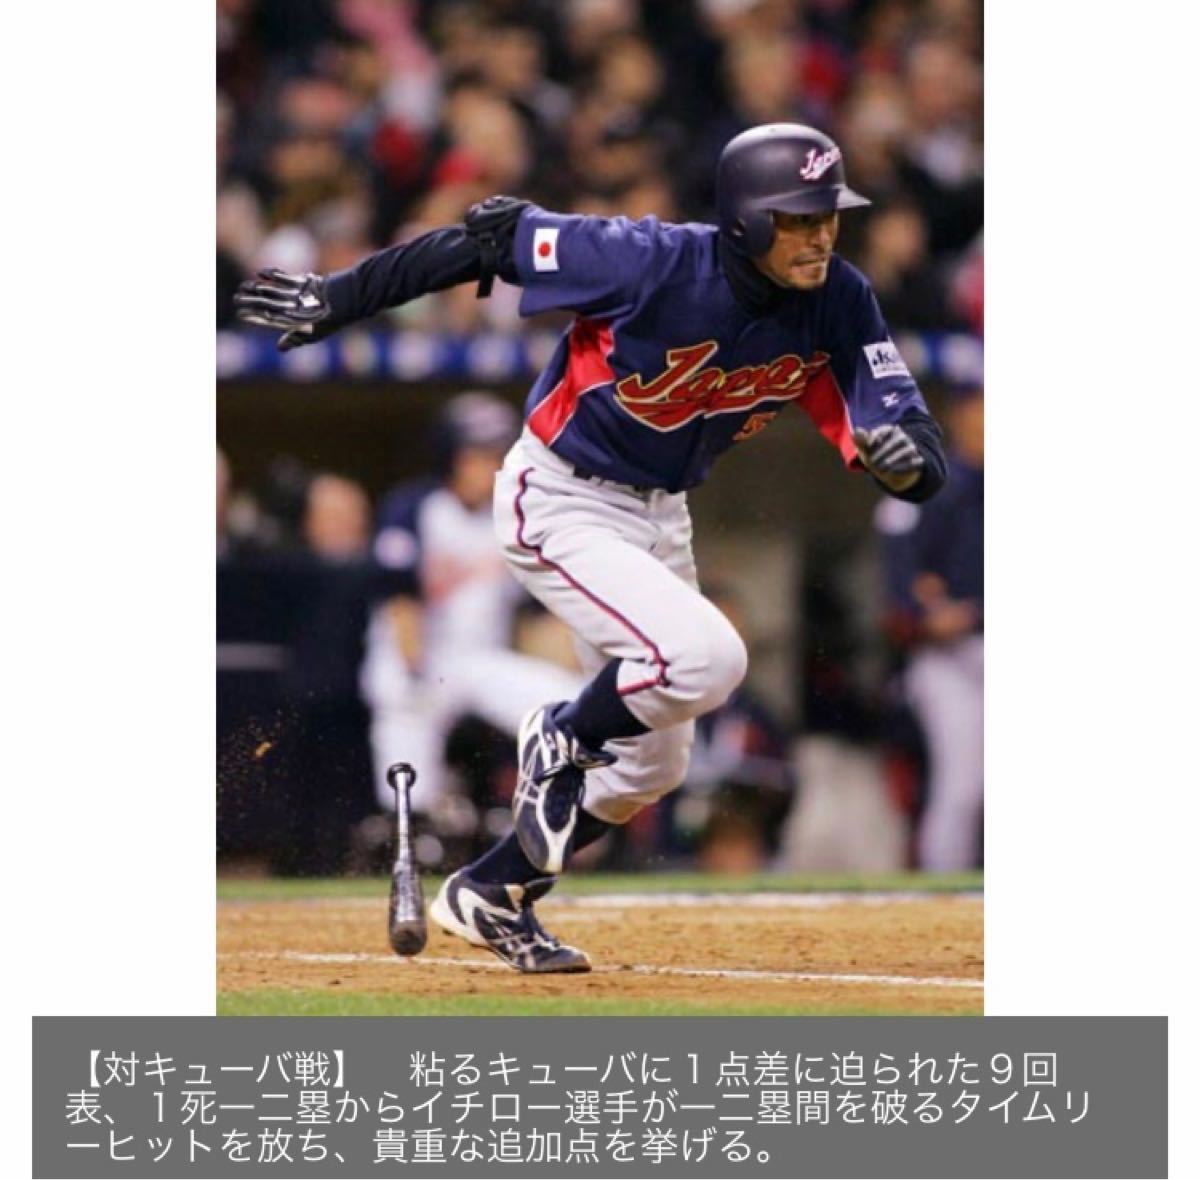 タグ付新品 2006WBC日本代表 イチロー選手ユニフォーム ミズノプロ-